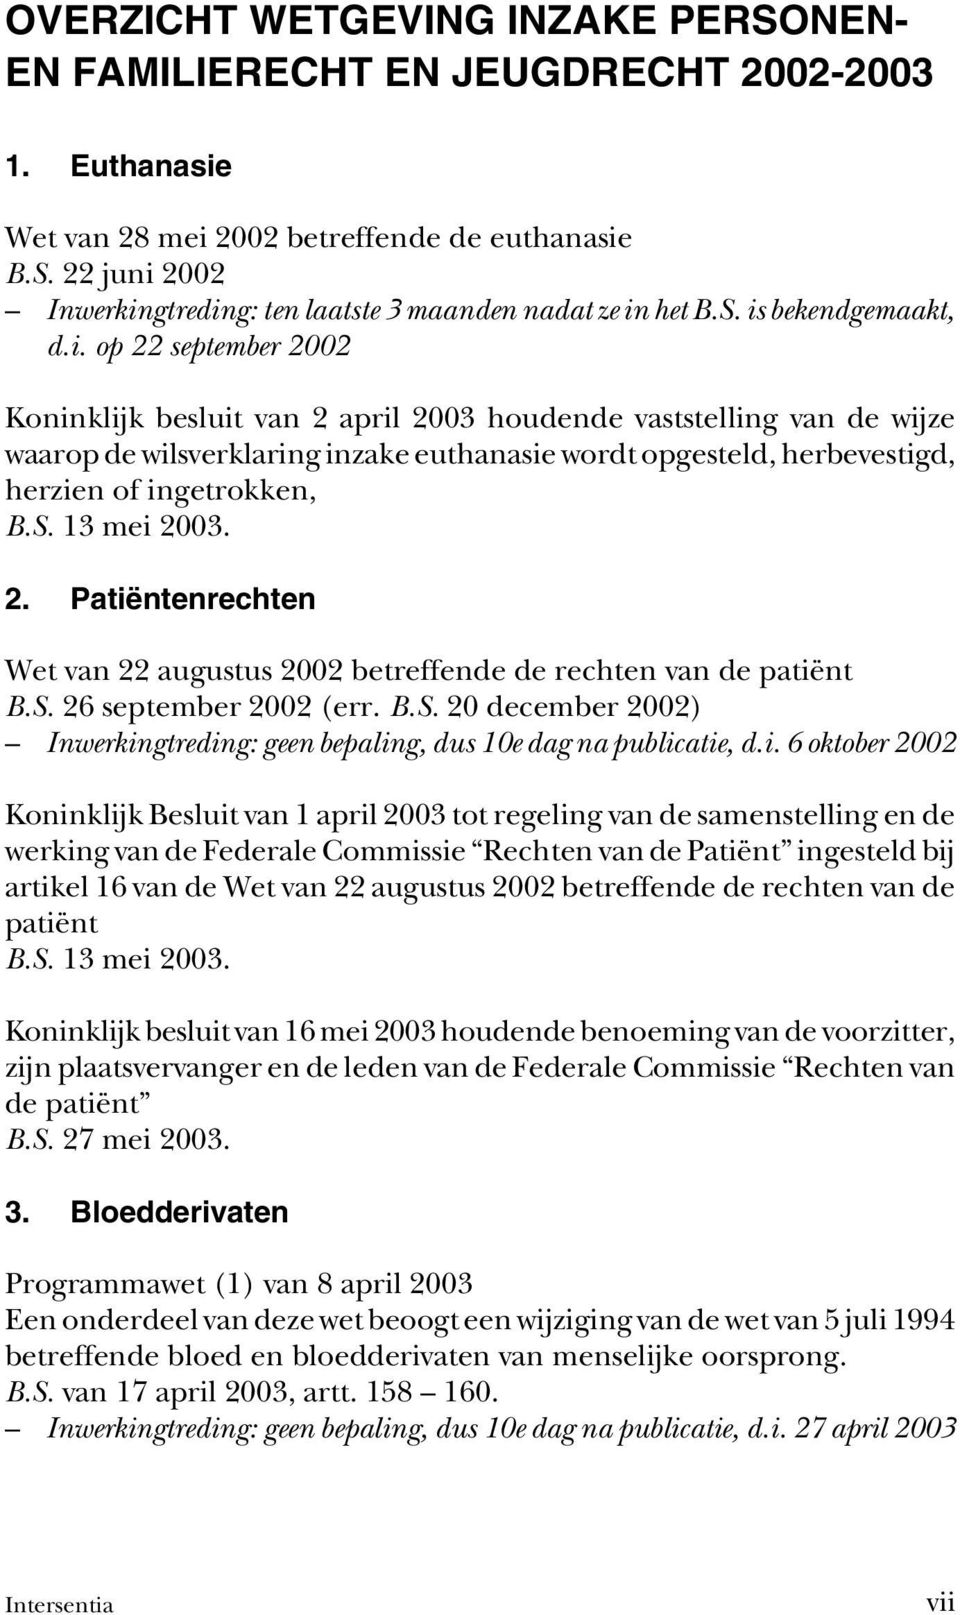 S. 13 mei 2003. 2. Patiëntenrechten Wet van 22 augustus 2002 betreffende de rechten van de patiënt B.S. 26 september 2002 (err. B.S. 20 december 2002) Inwerkingtreding: geen bepaling, dus 10e dag na publicatie, d.